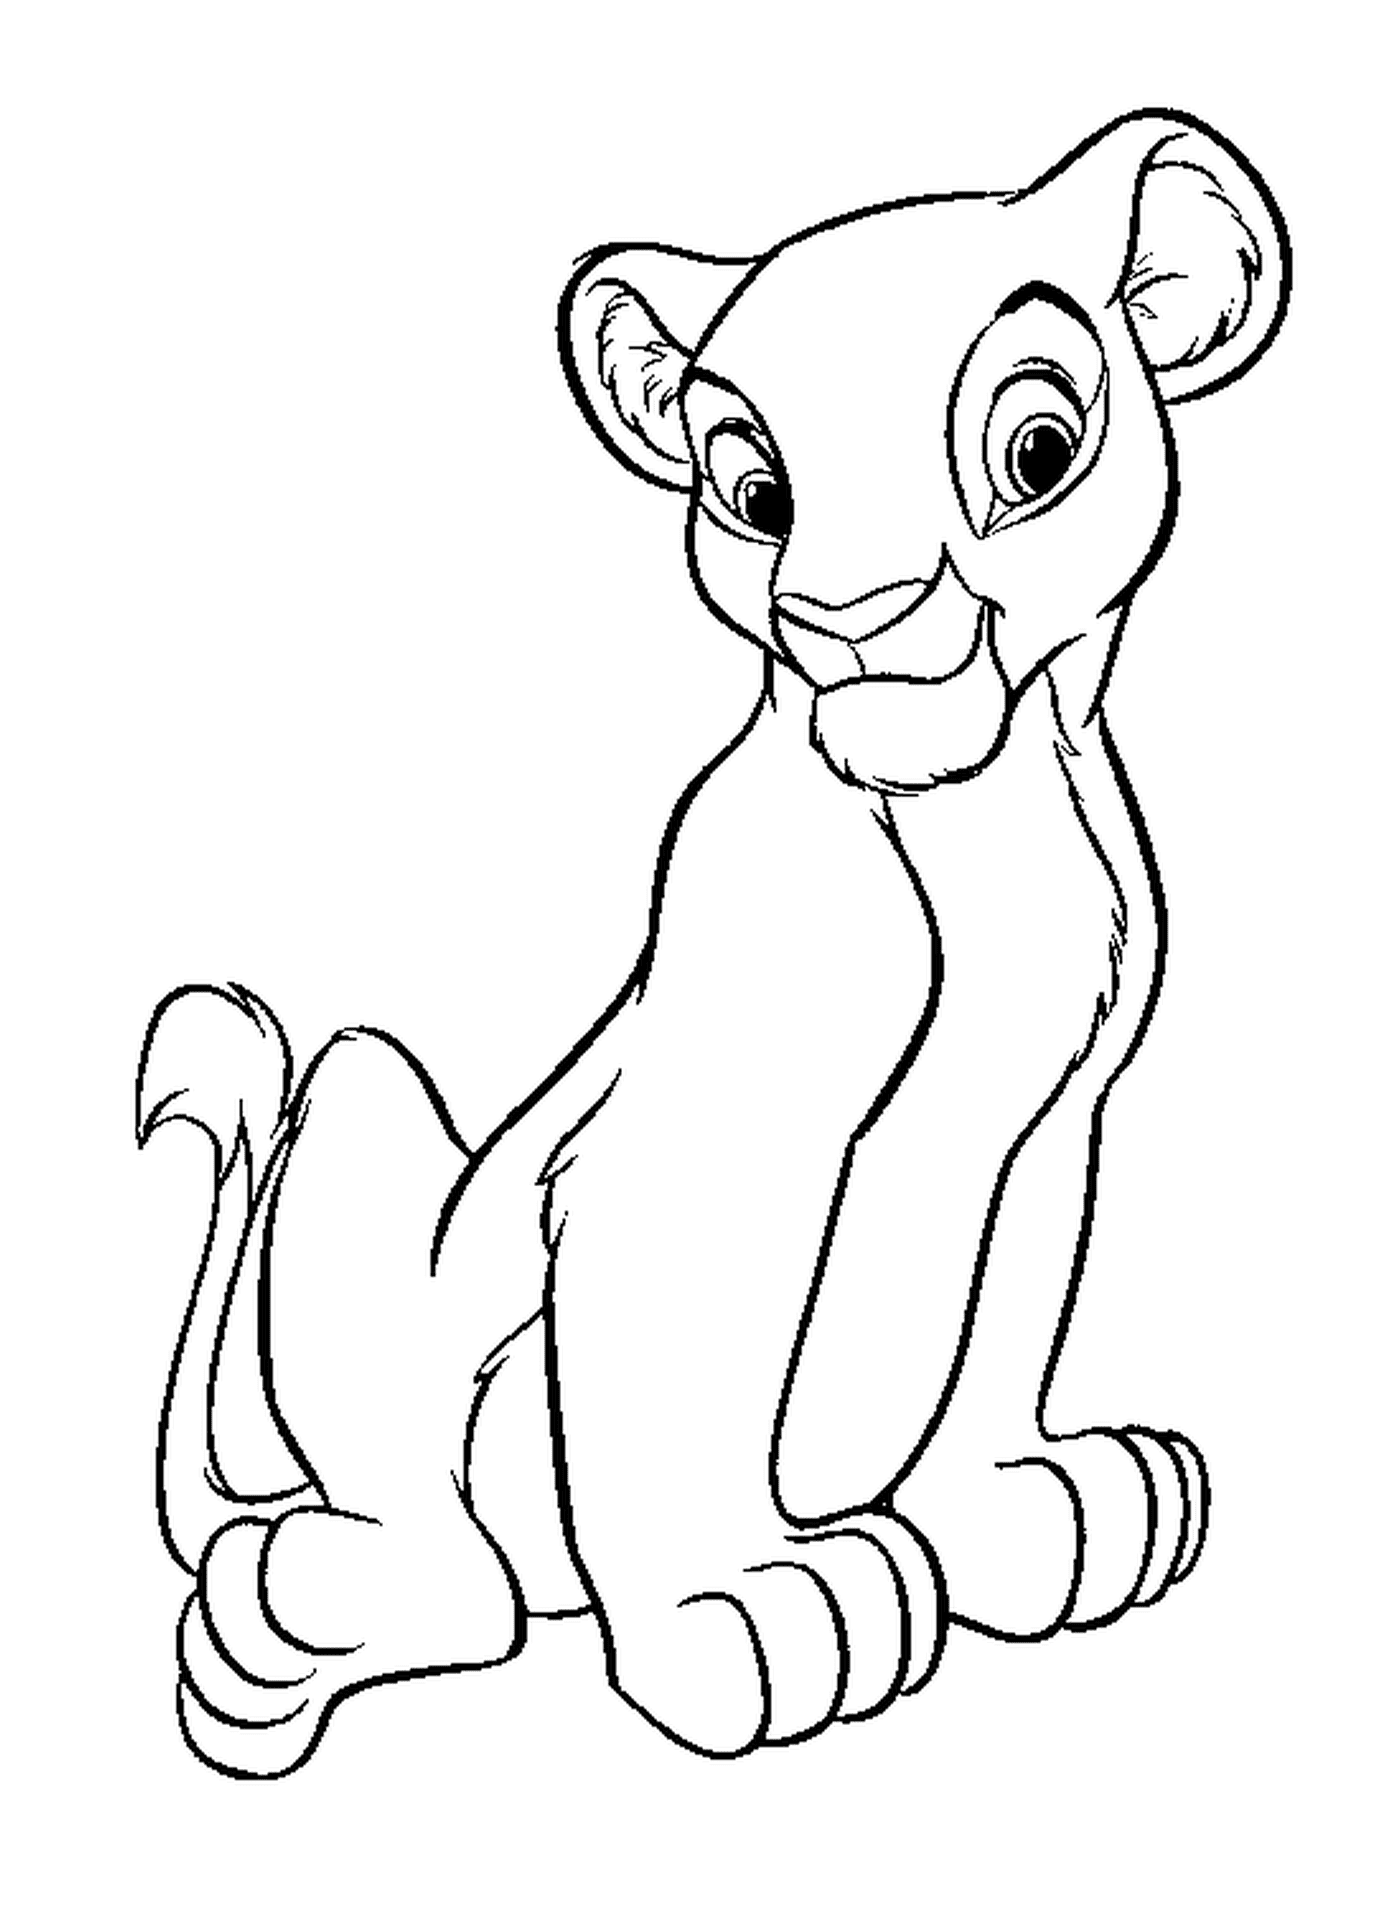  Nala, character of the Lion King 